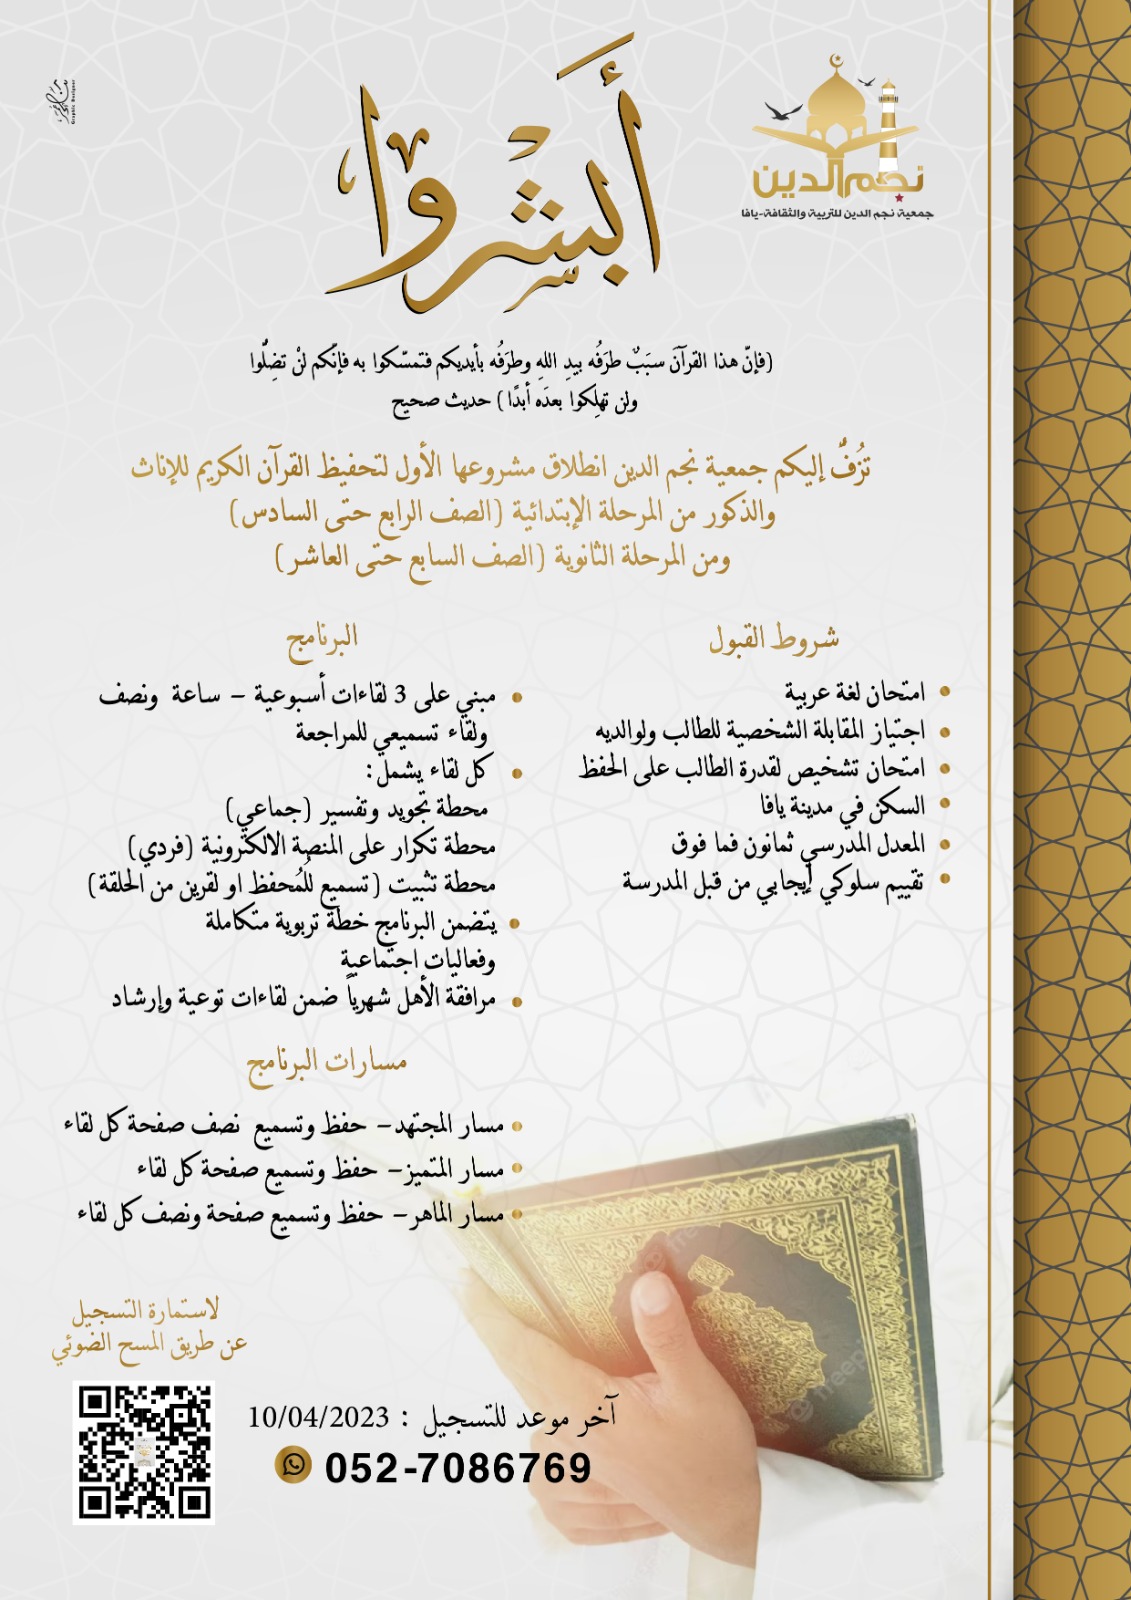  يافا: جمعية نجم الدين تُطلق مشروعها الأول لحفظ القرآن الكريم 